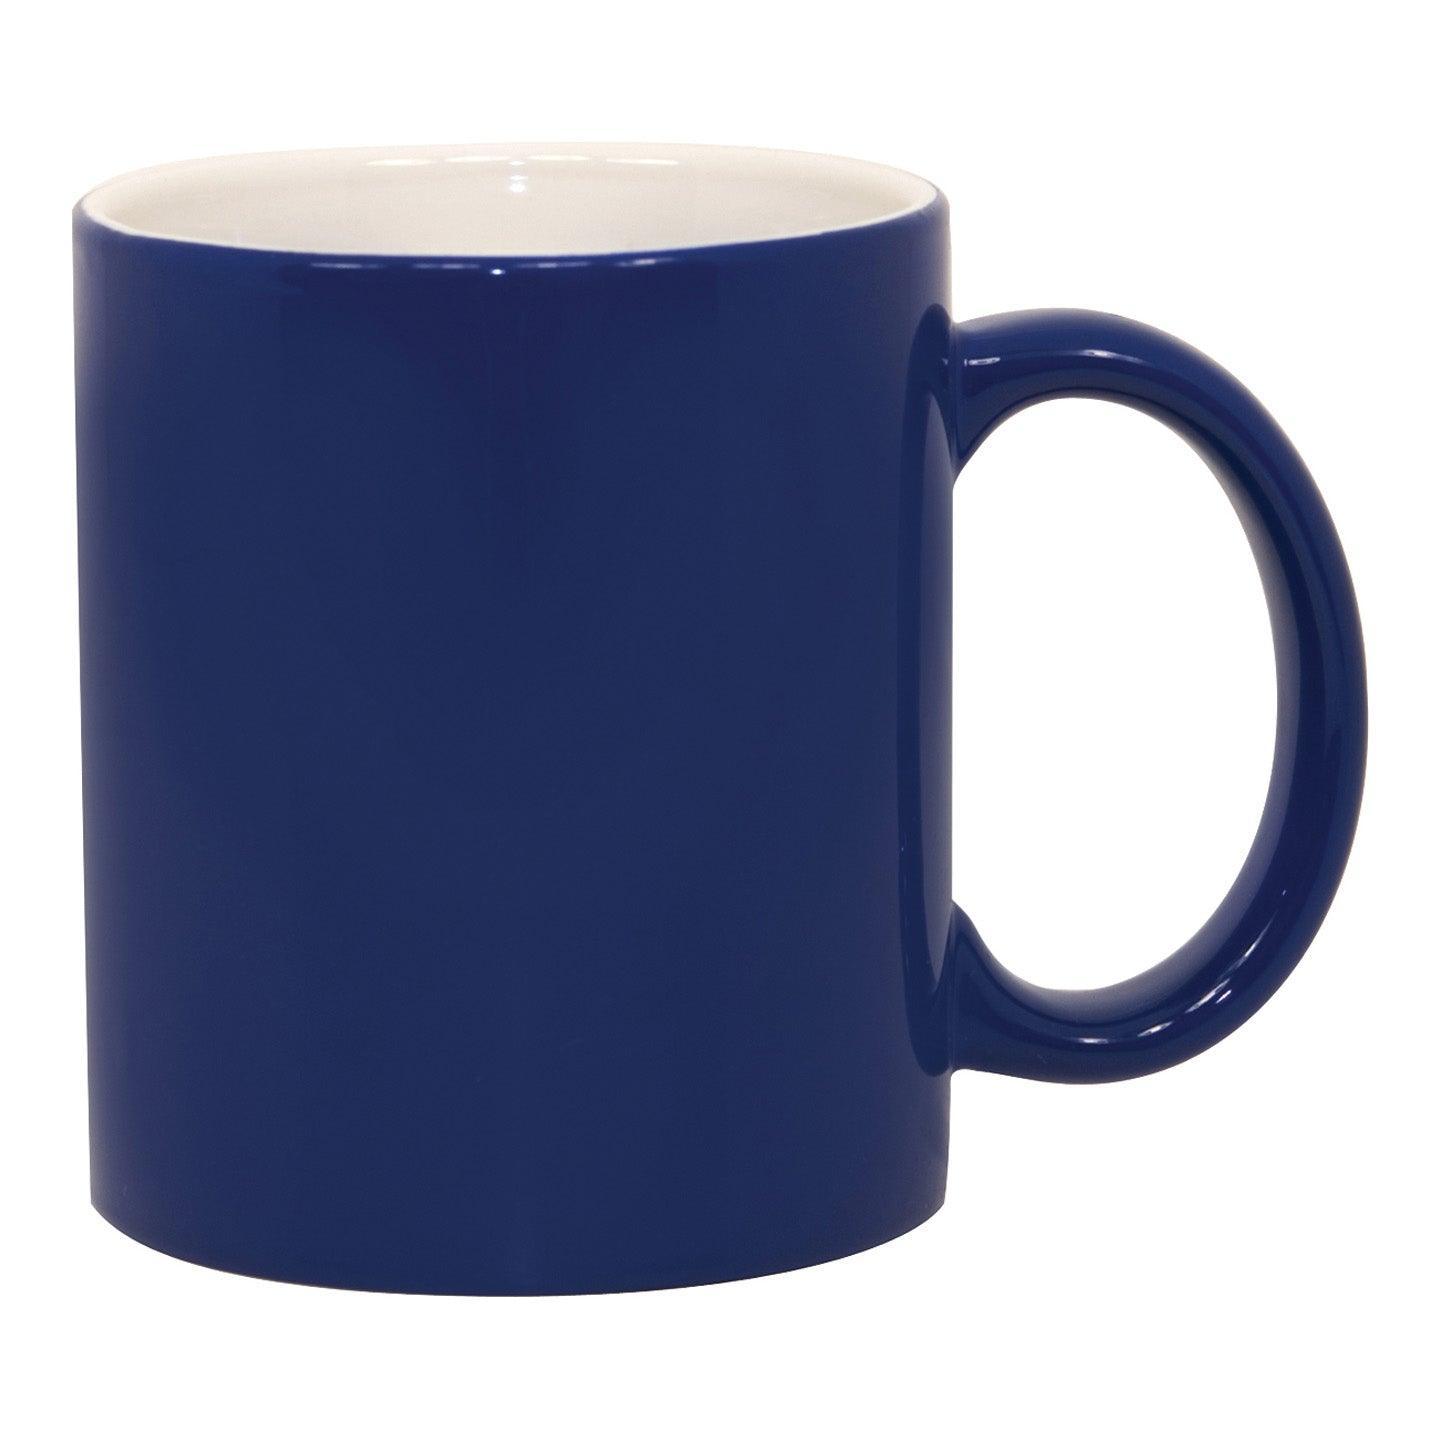 Gator Mugs Bulk Sublimation Blank Ceramic Mug White With Blue Interior,  15oz case of 36 